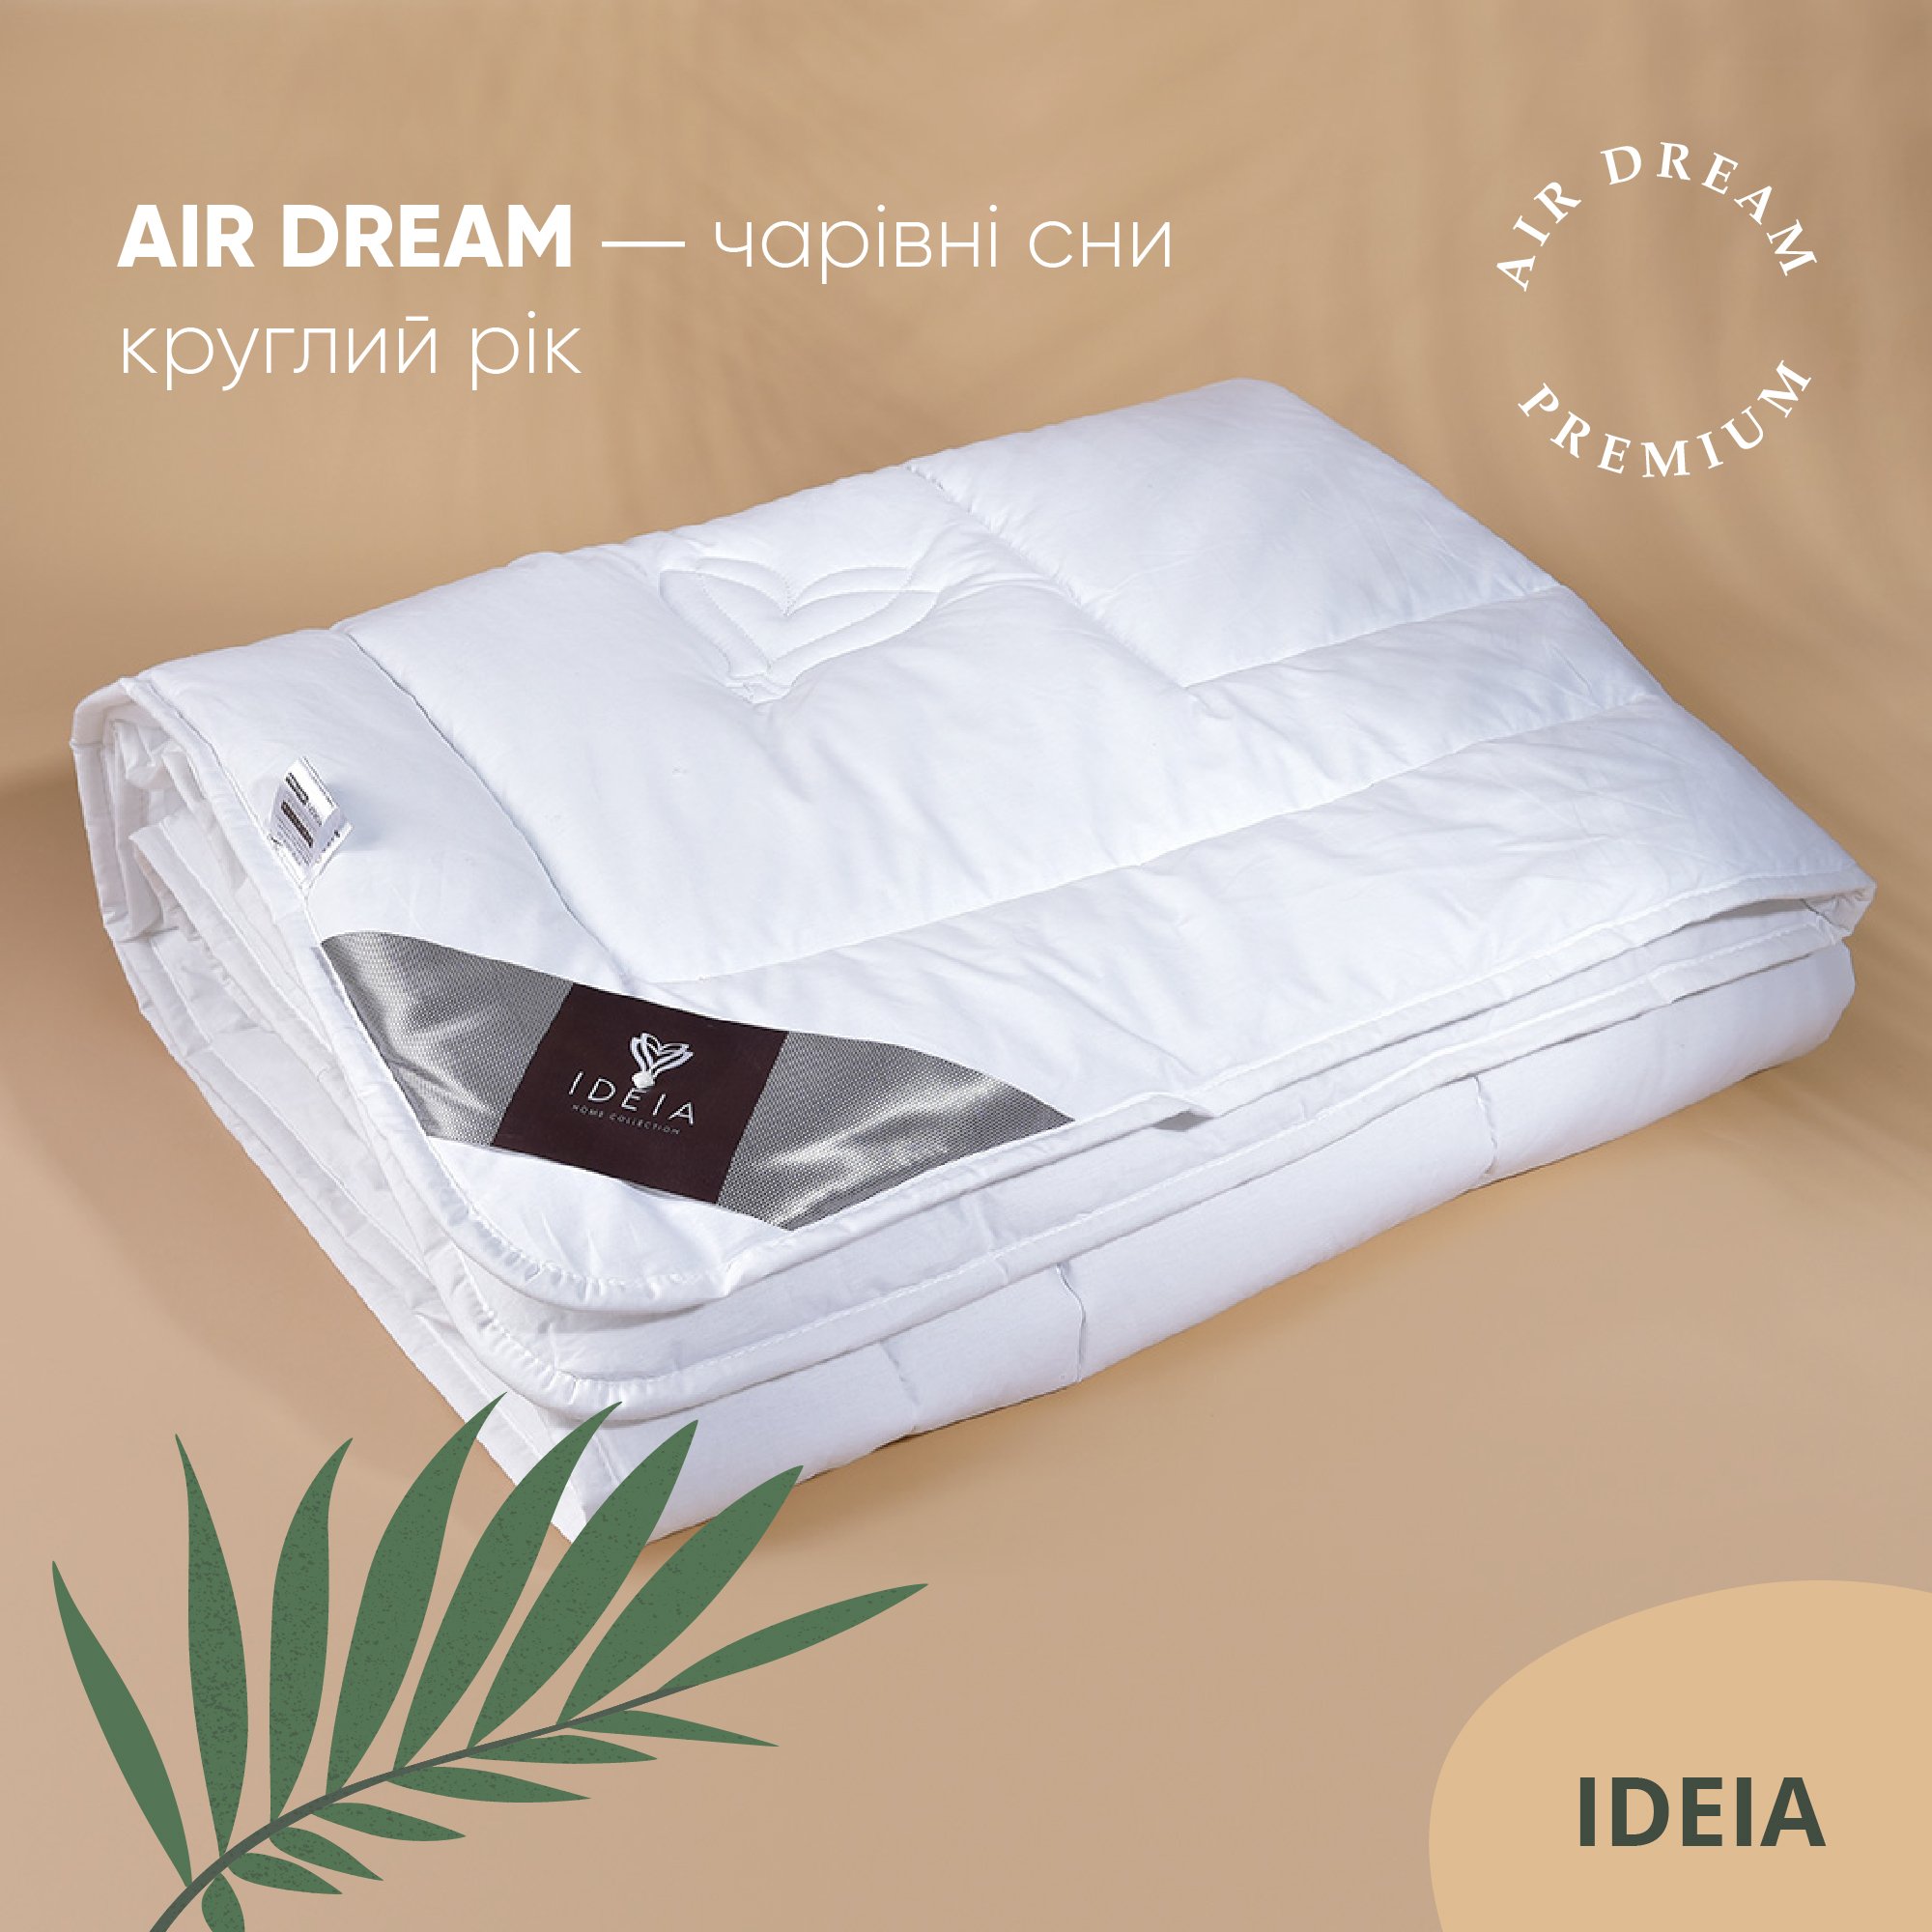 Одеяло Ideia Air Dream Premium летнее, 210х140, белый (8-11693) - фото 6